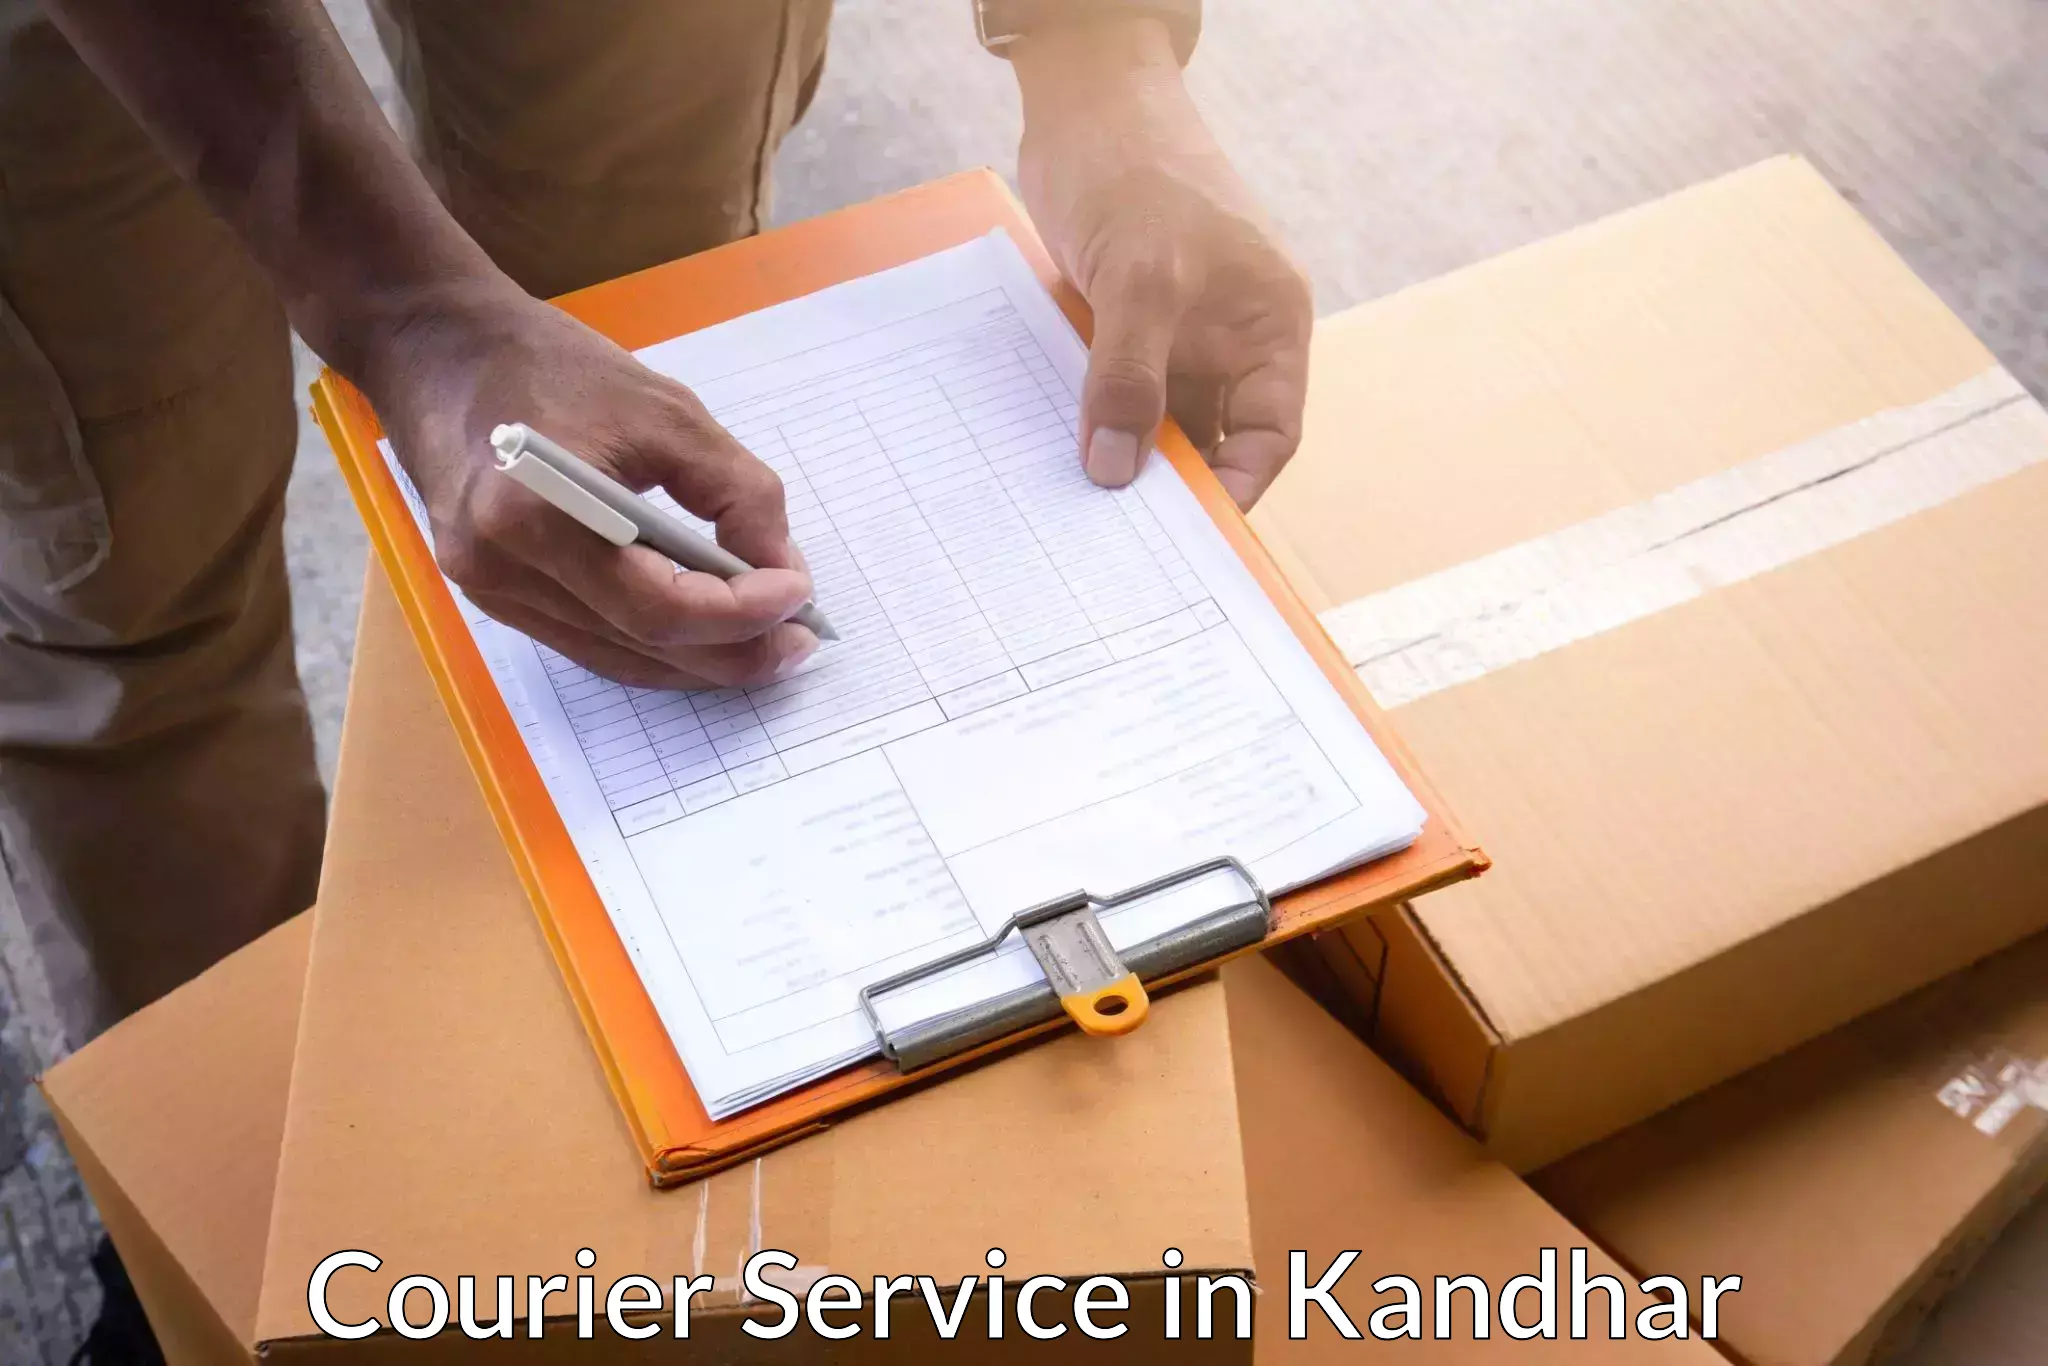 Diverse delivery methods in Kandhar